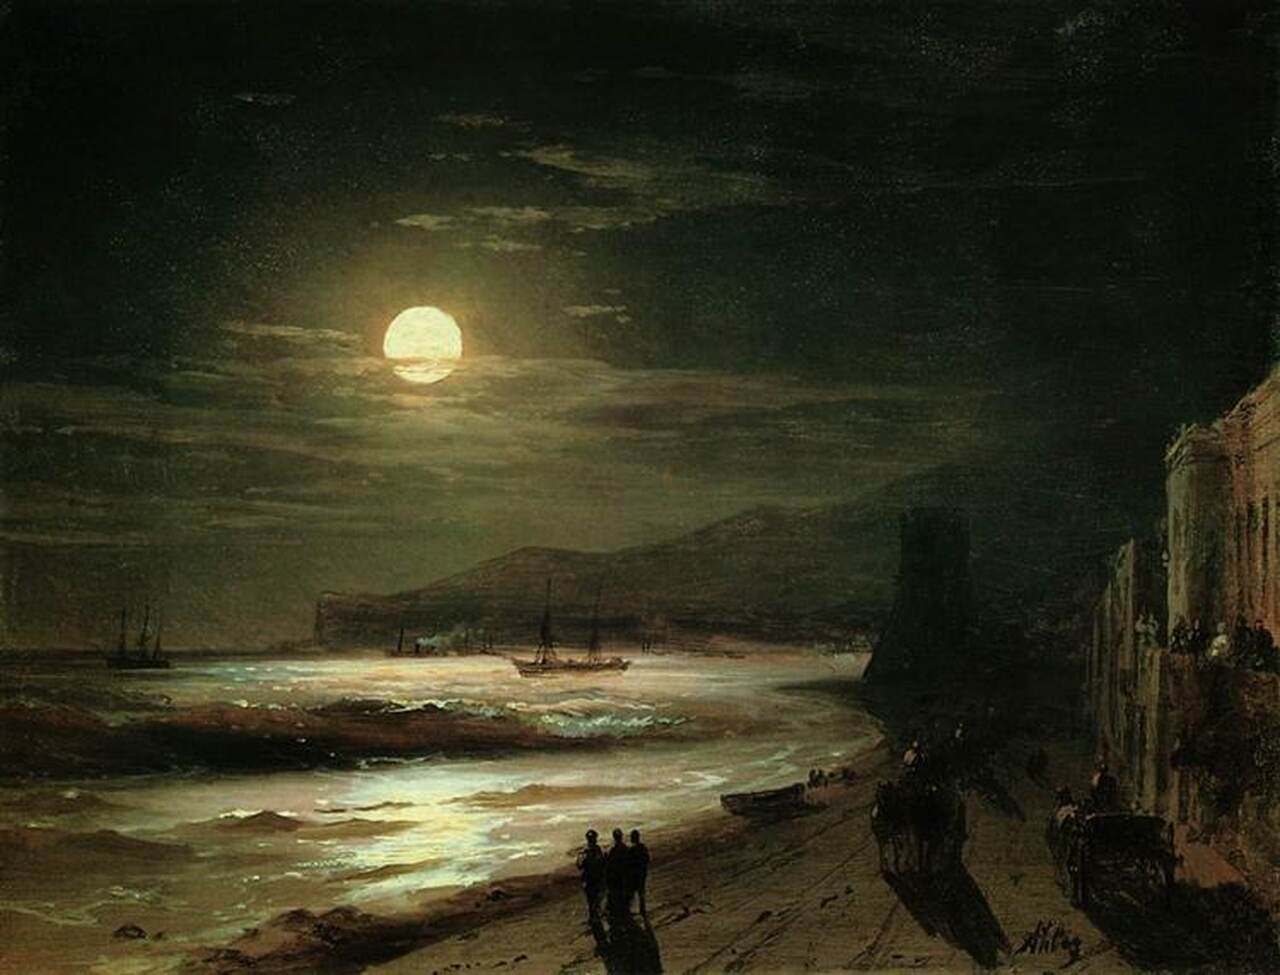 Pintura "Moon Night", de Ivan Aivazovsky. Ilustrando o poema "Não Sabes", de Castro Alves.